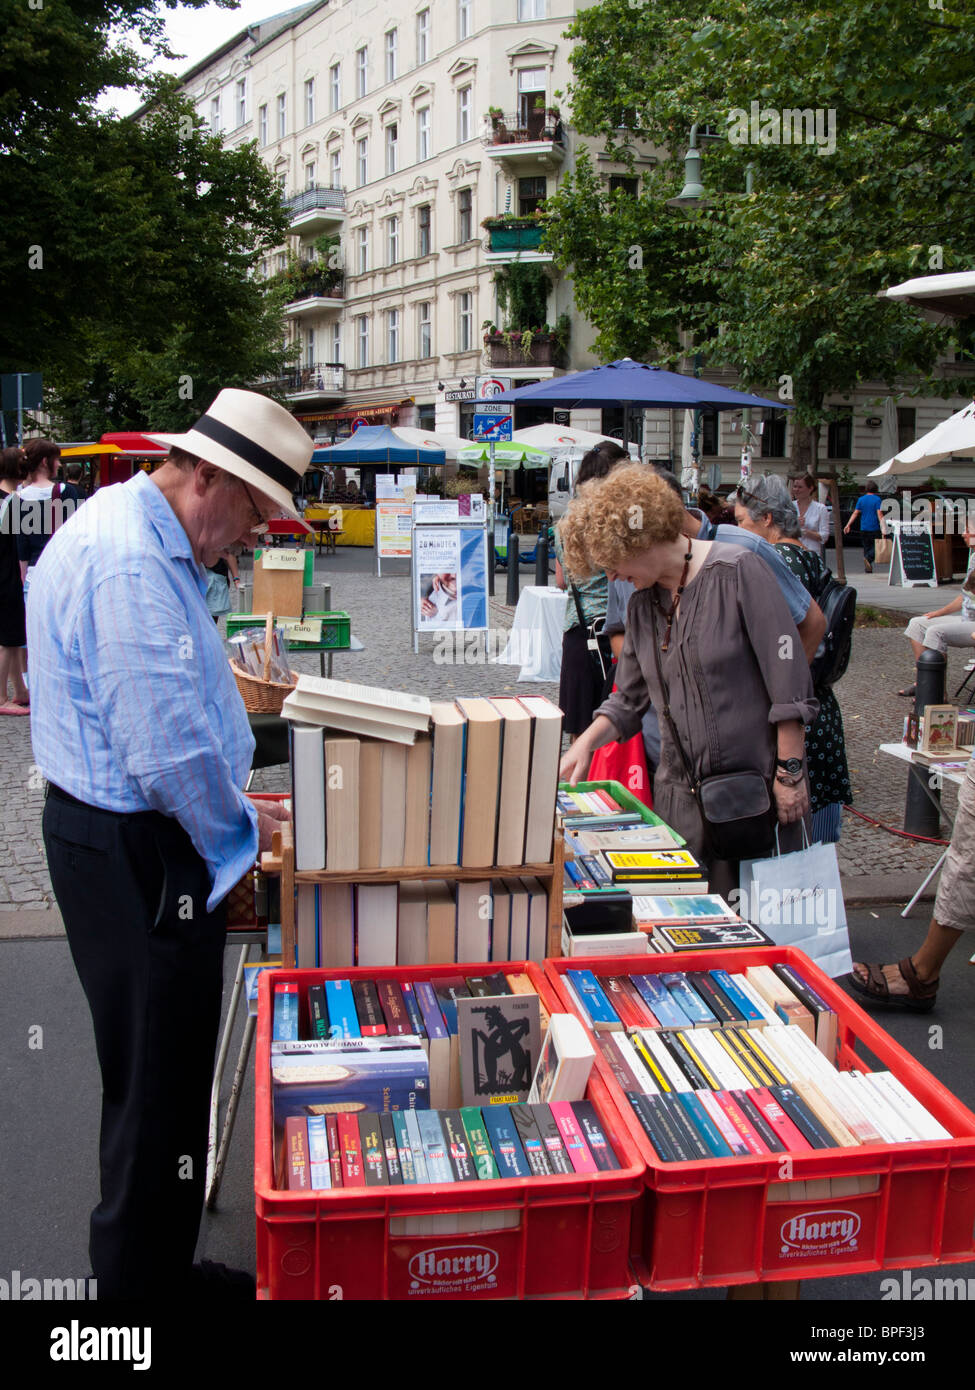 Libro puesto en el mercado al aire libre en Kollwitzplatz en el distrito de Prenzlauer Berg de Berlín, Alemania Foto de stock